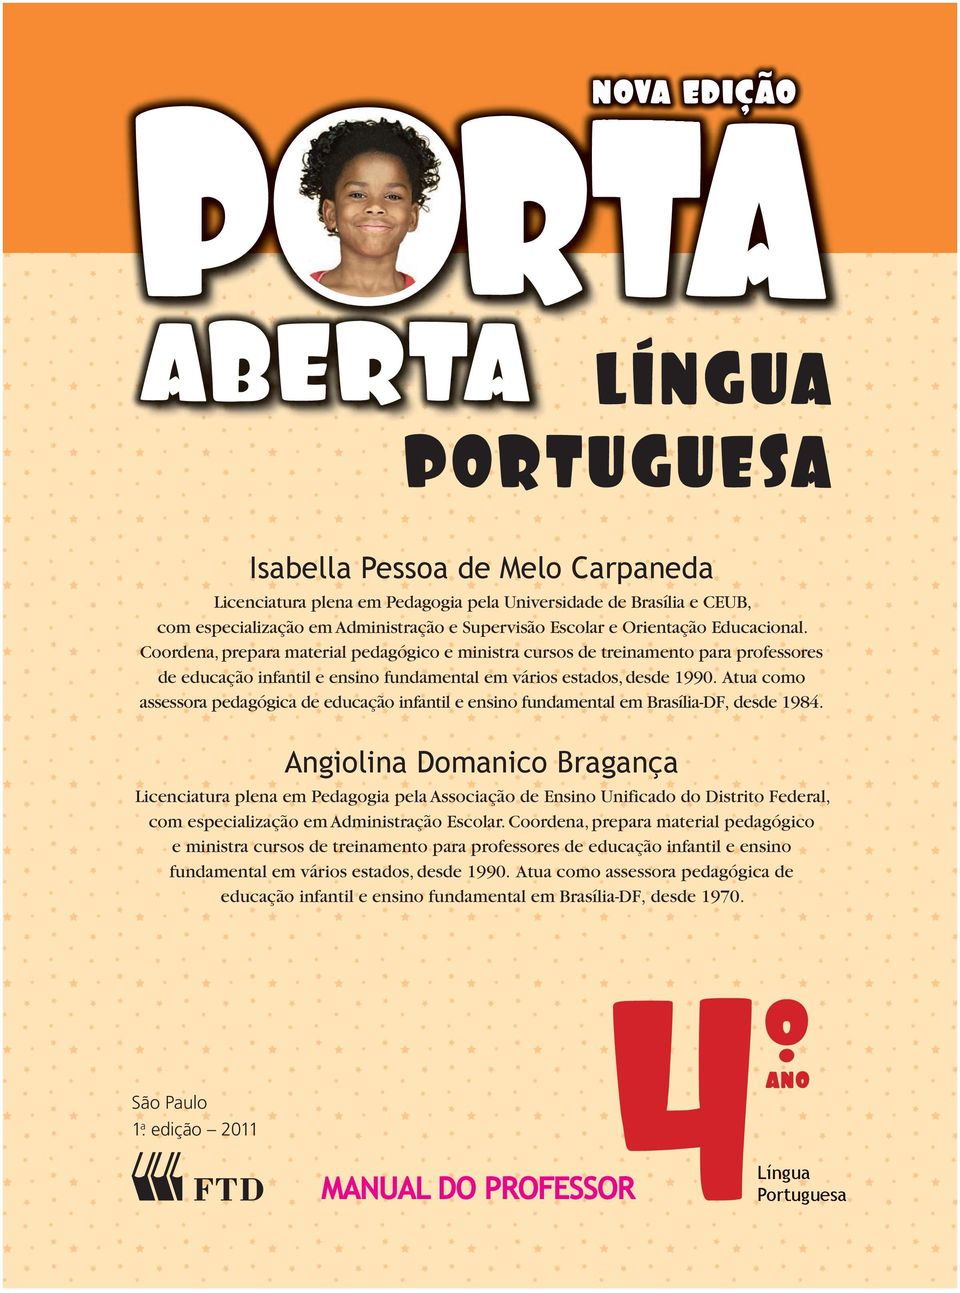 Atua como assessora pedagógica de educação infantil e ensino fundamental em Brasília-DF, desde 1984.